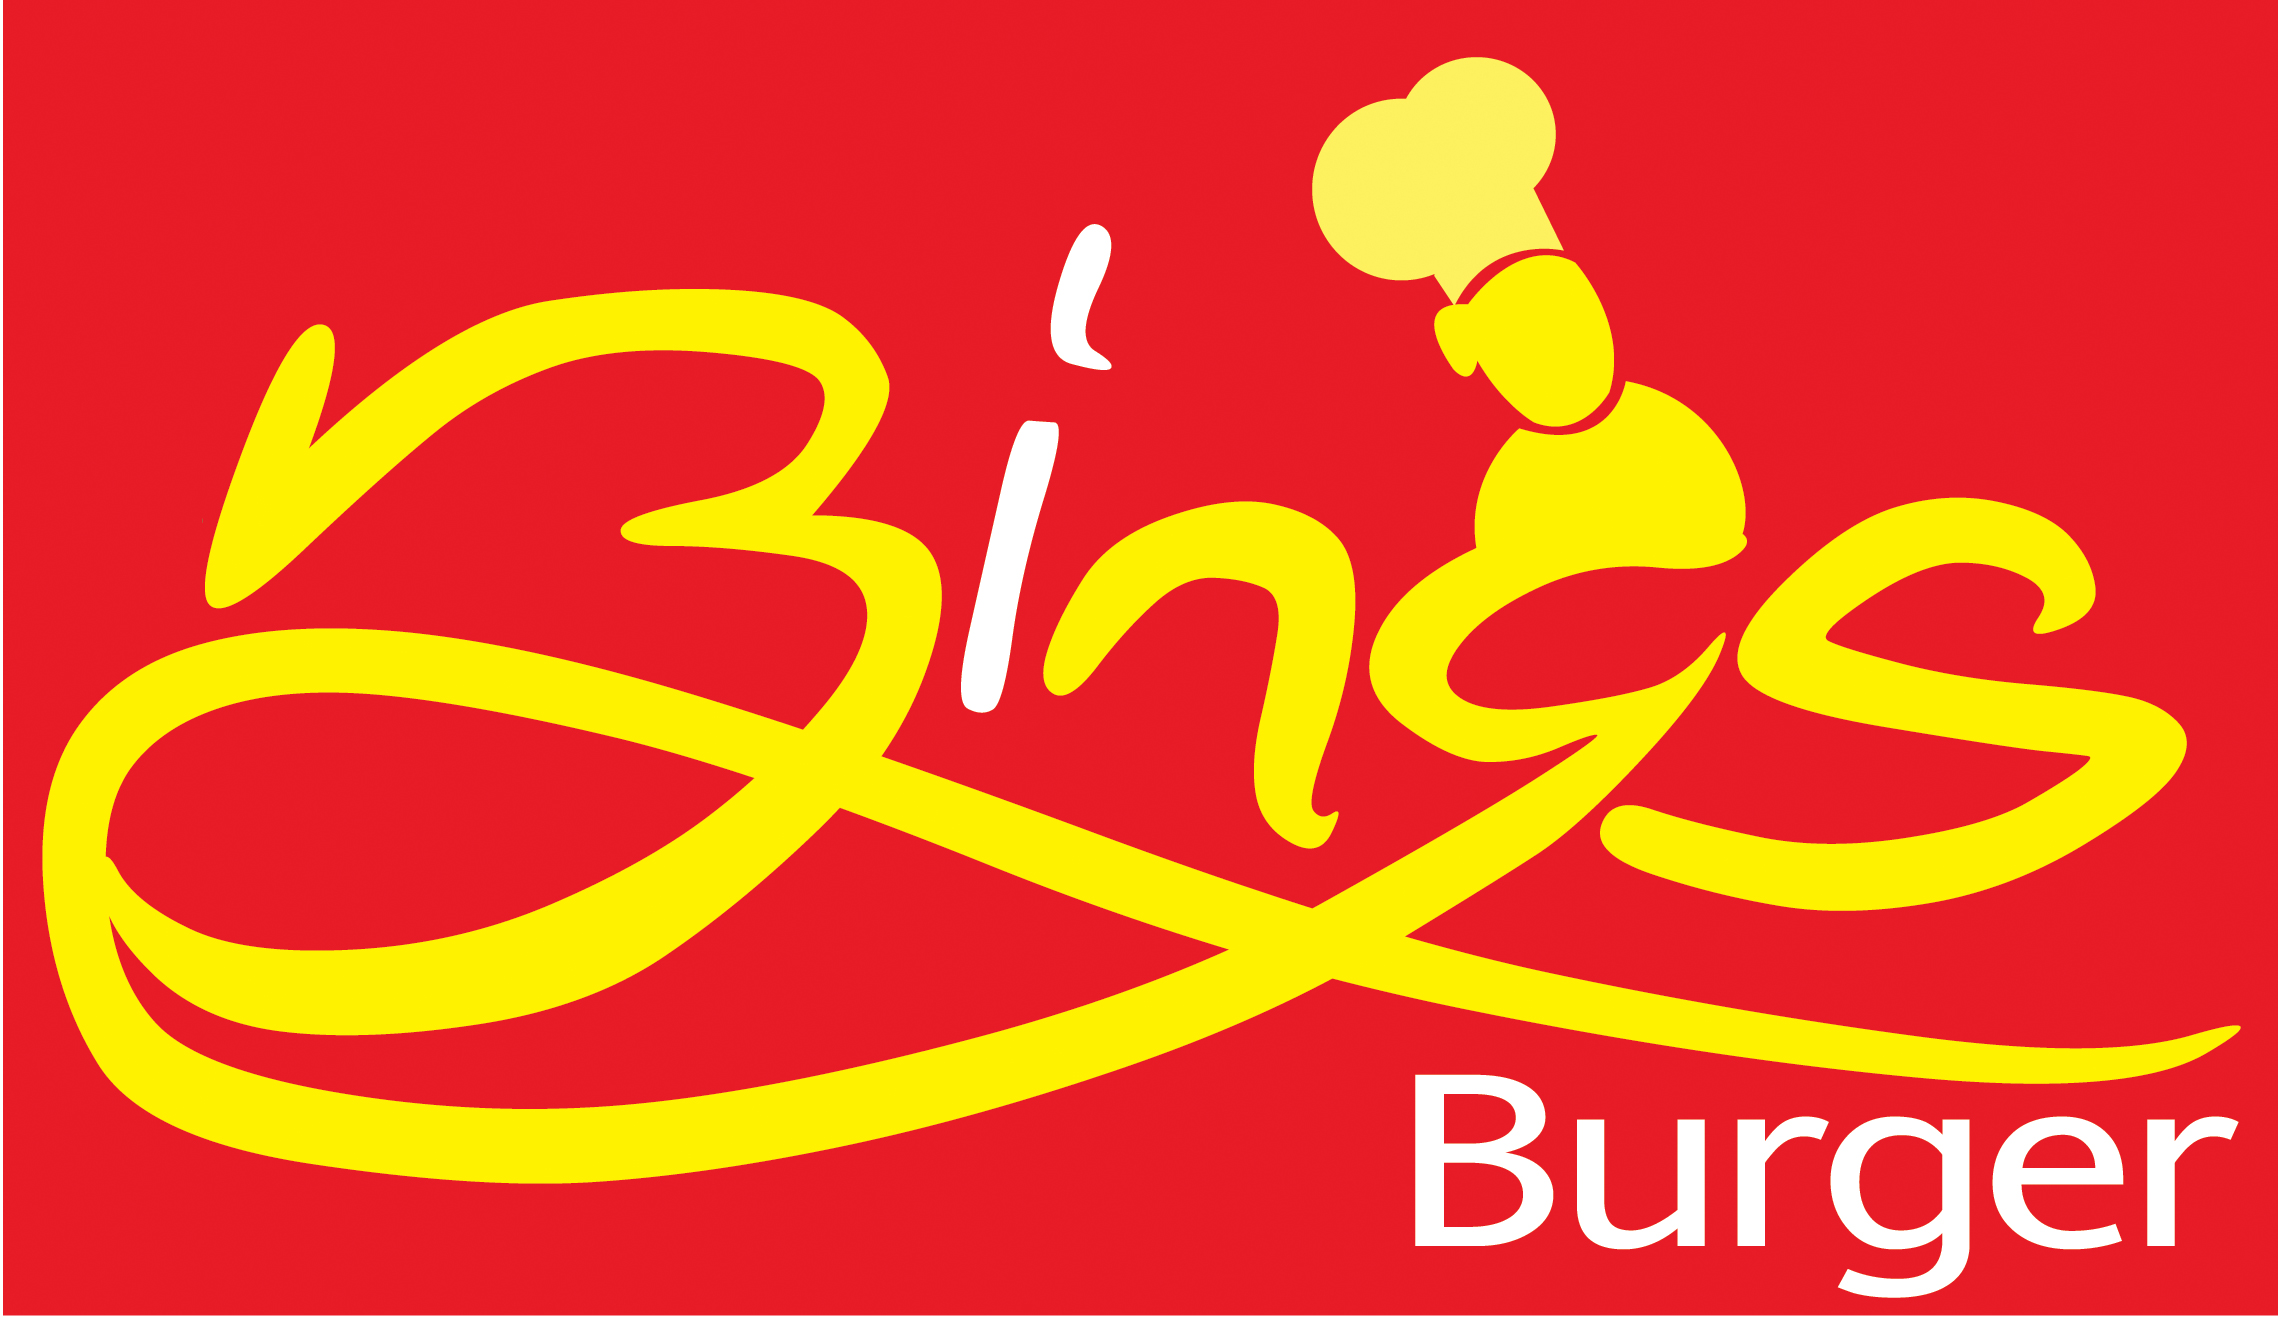 Bing's Burger